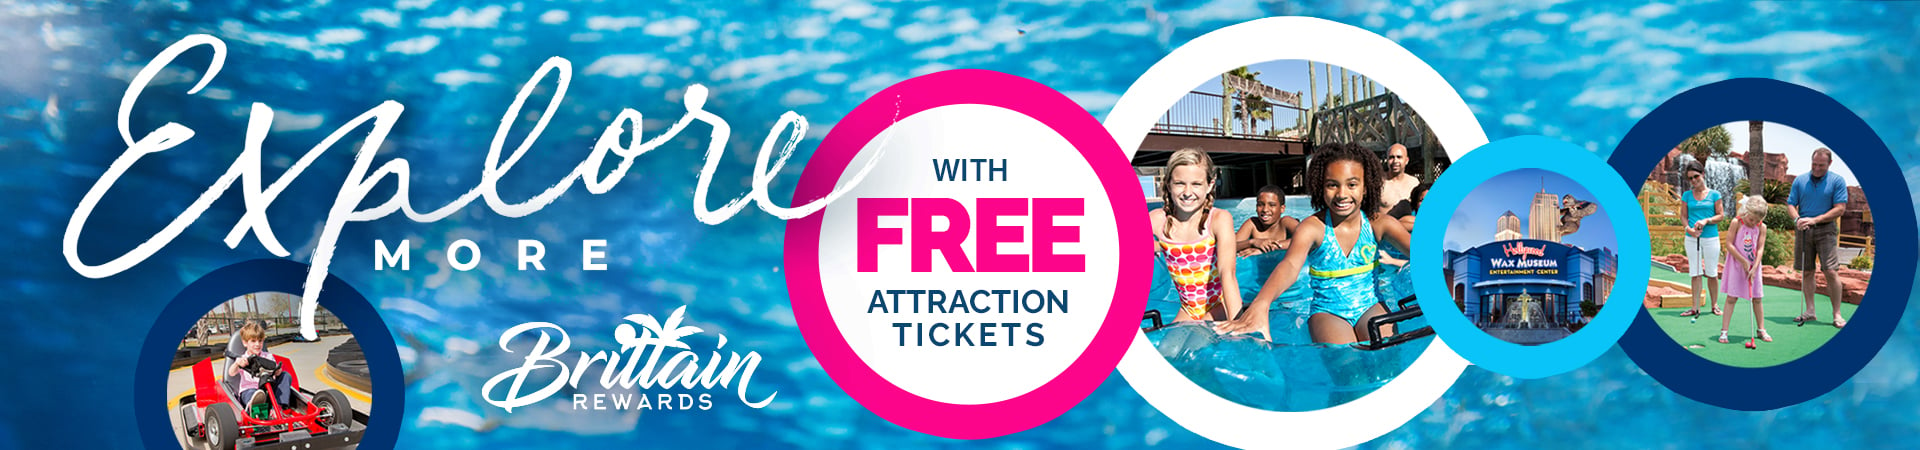 Free Attraction Tickets with Brittain Rewards